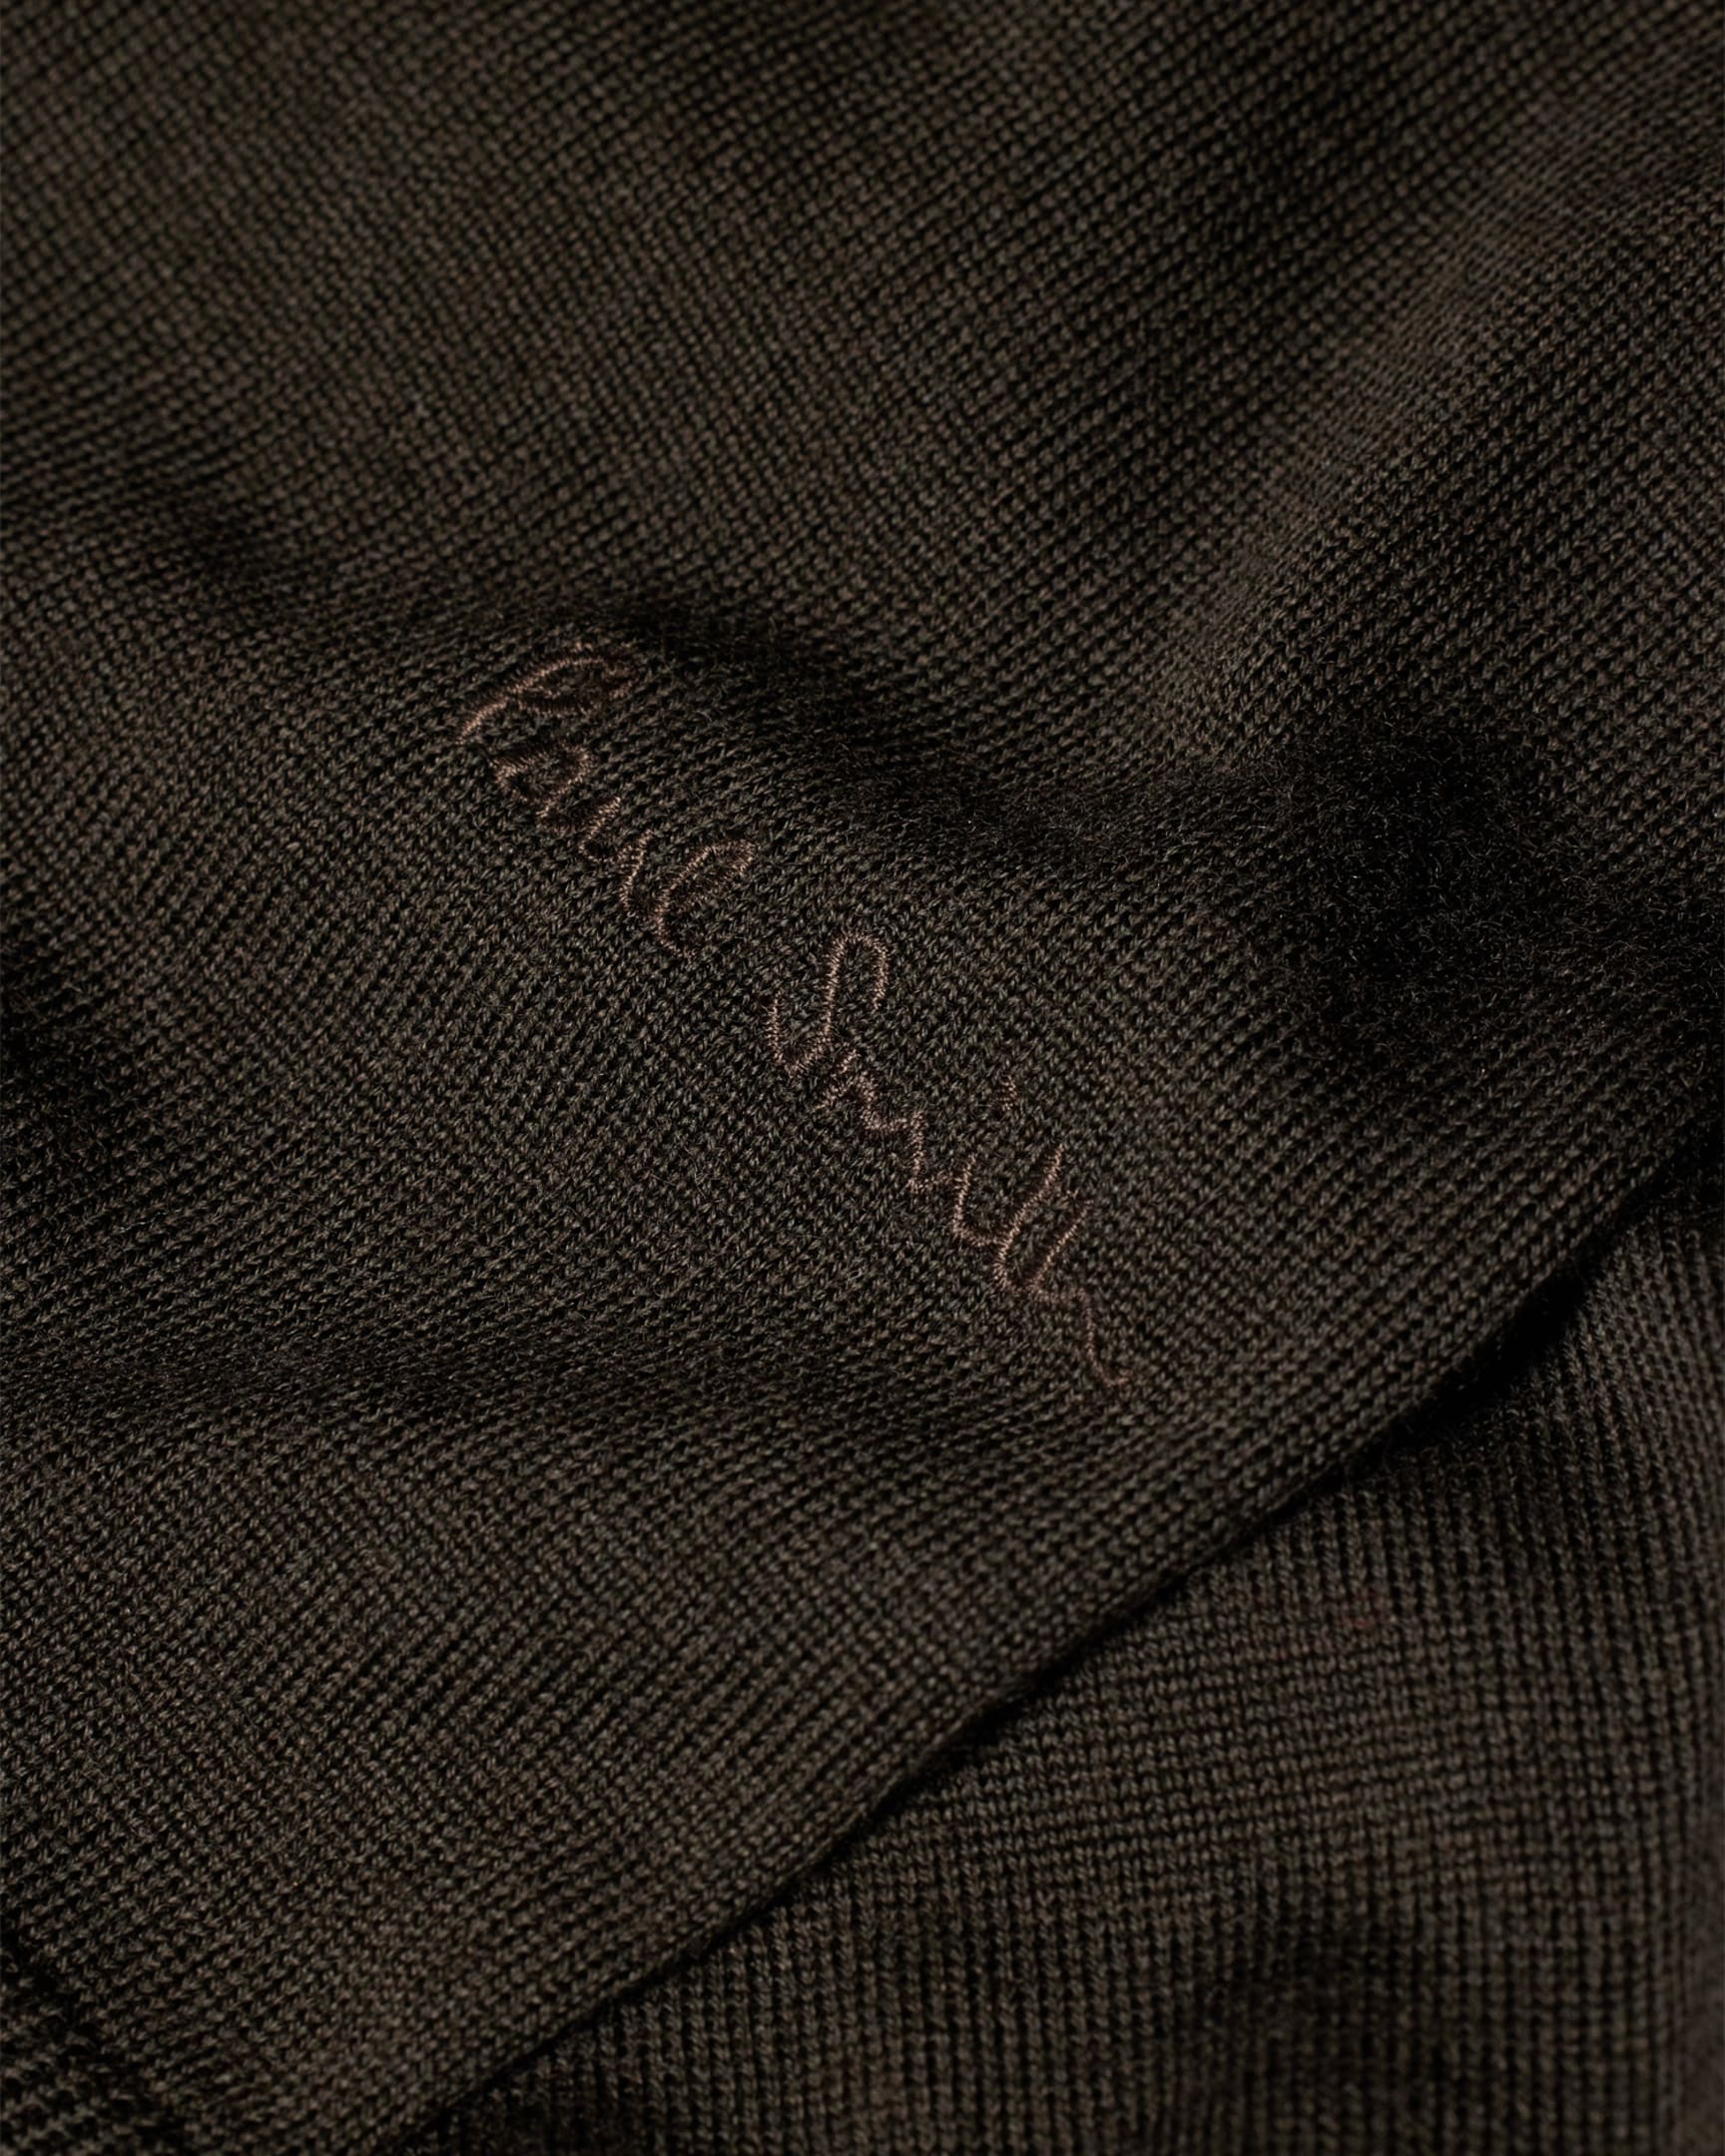 Detail View - Dark Khaki Merino Wool V-Neck Sweater Paul Smith